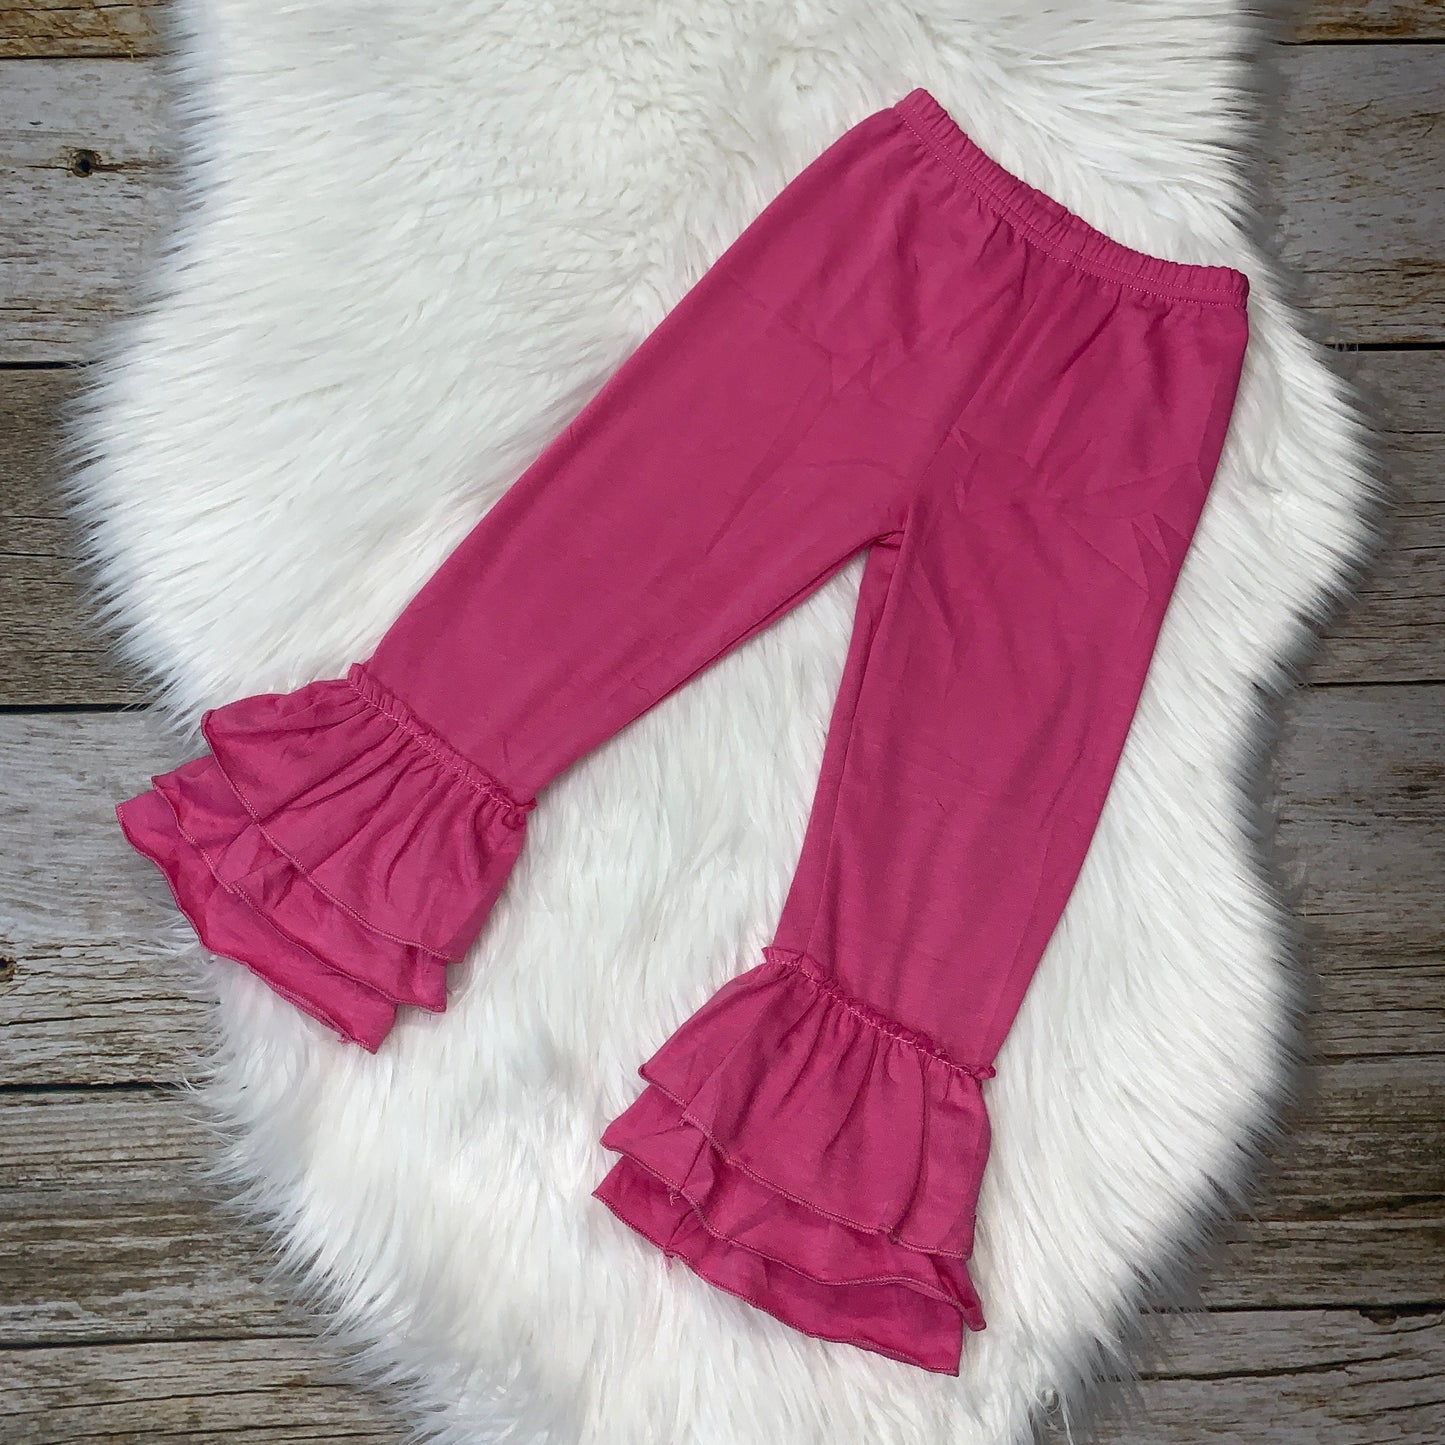 Knit Cotton Truffle Pants - Hot Pink